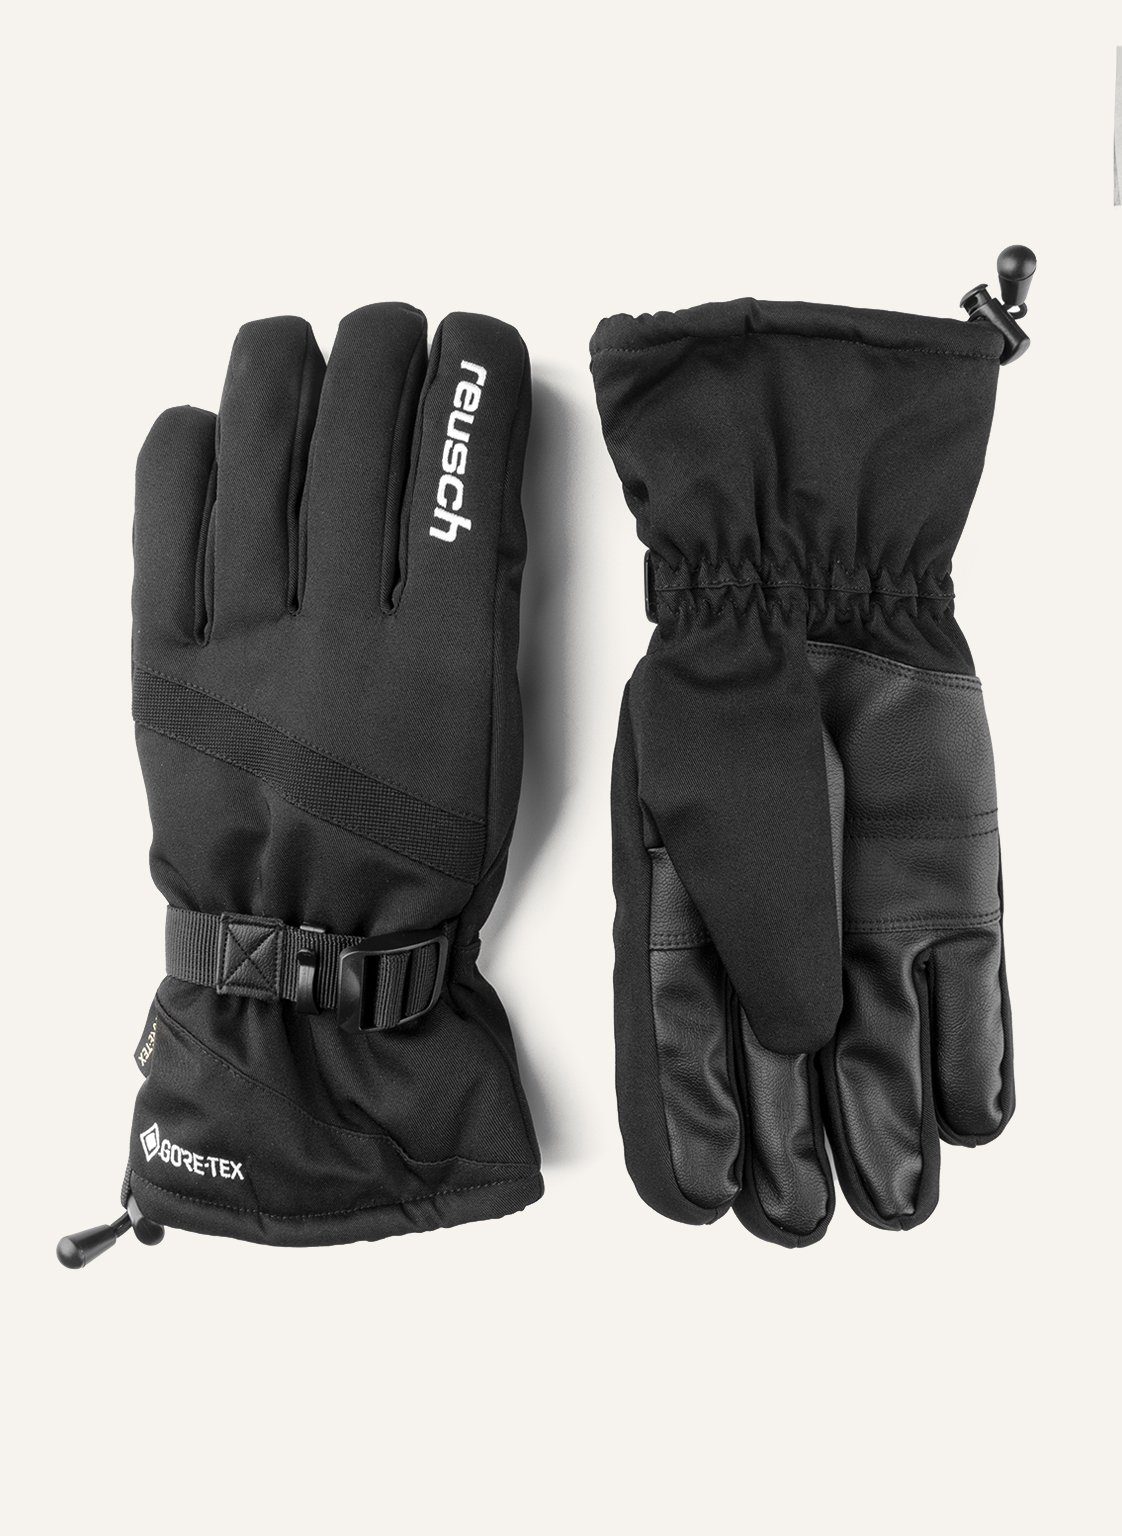 Reusch Skihandschuhe Winter Glove atmungsaktivem GORE-TEX Warm wasserdichtem aus Material und